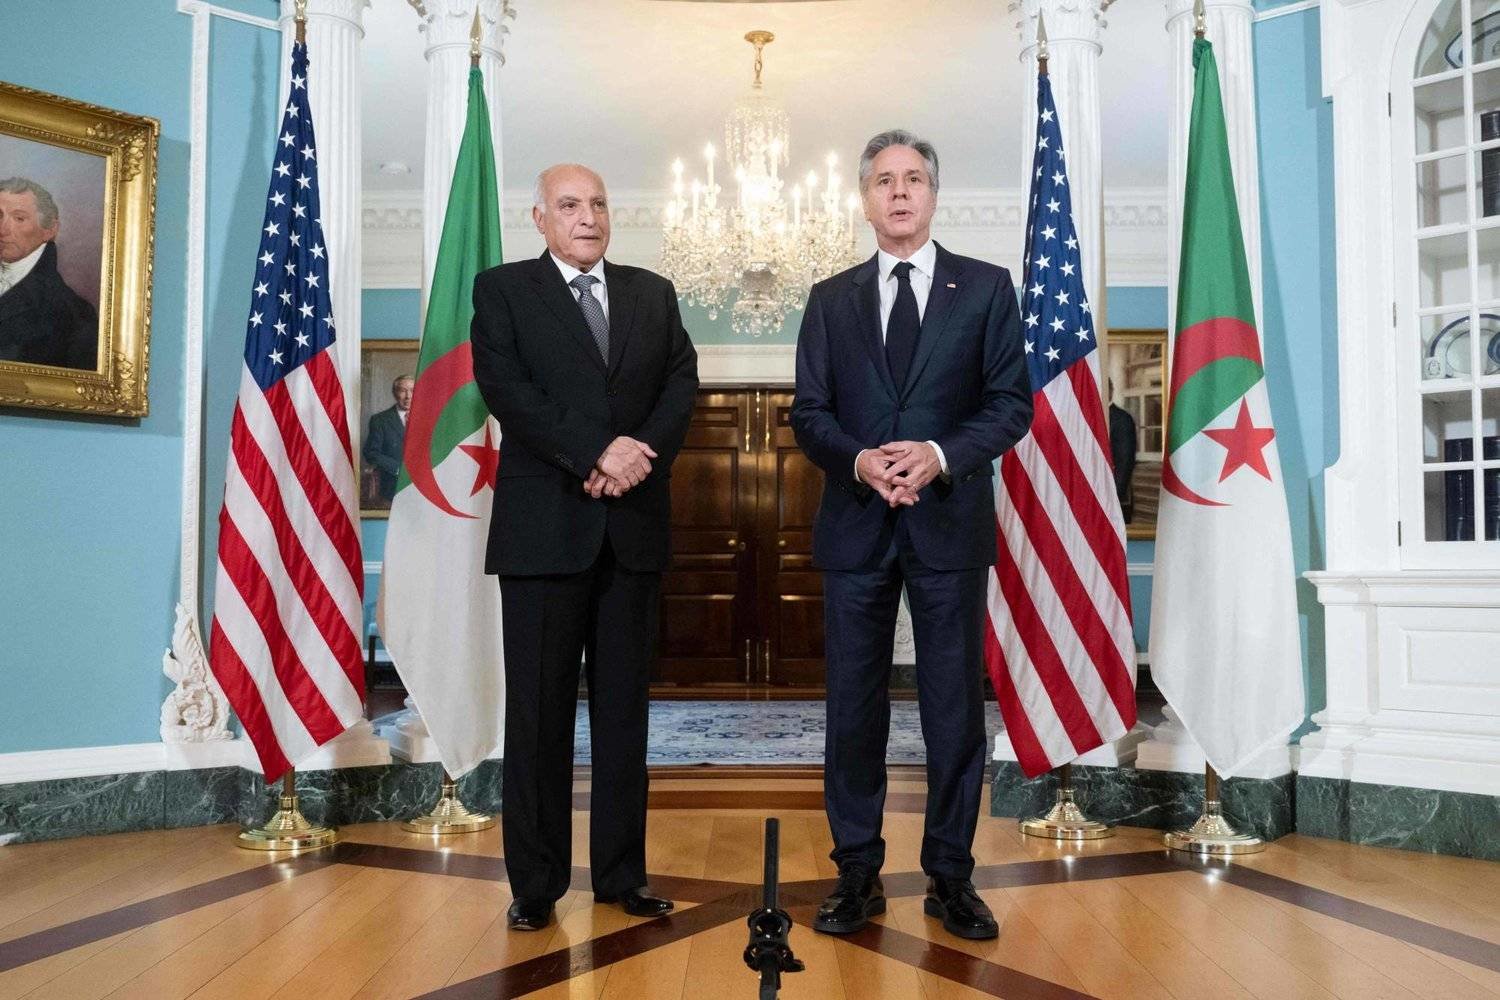 دوافع الجزائر لموازنة العلاقات بين الشرق والغرب